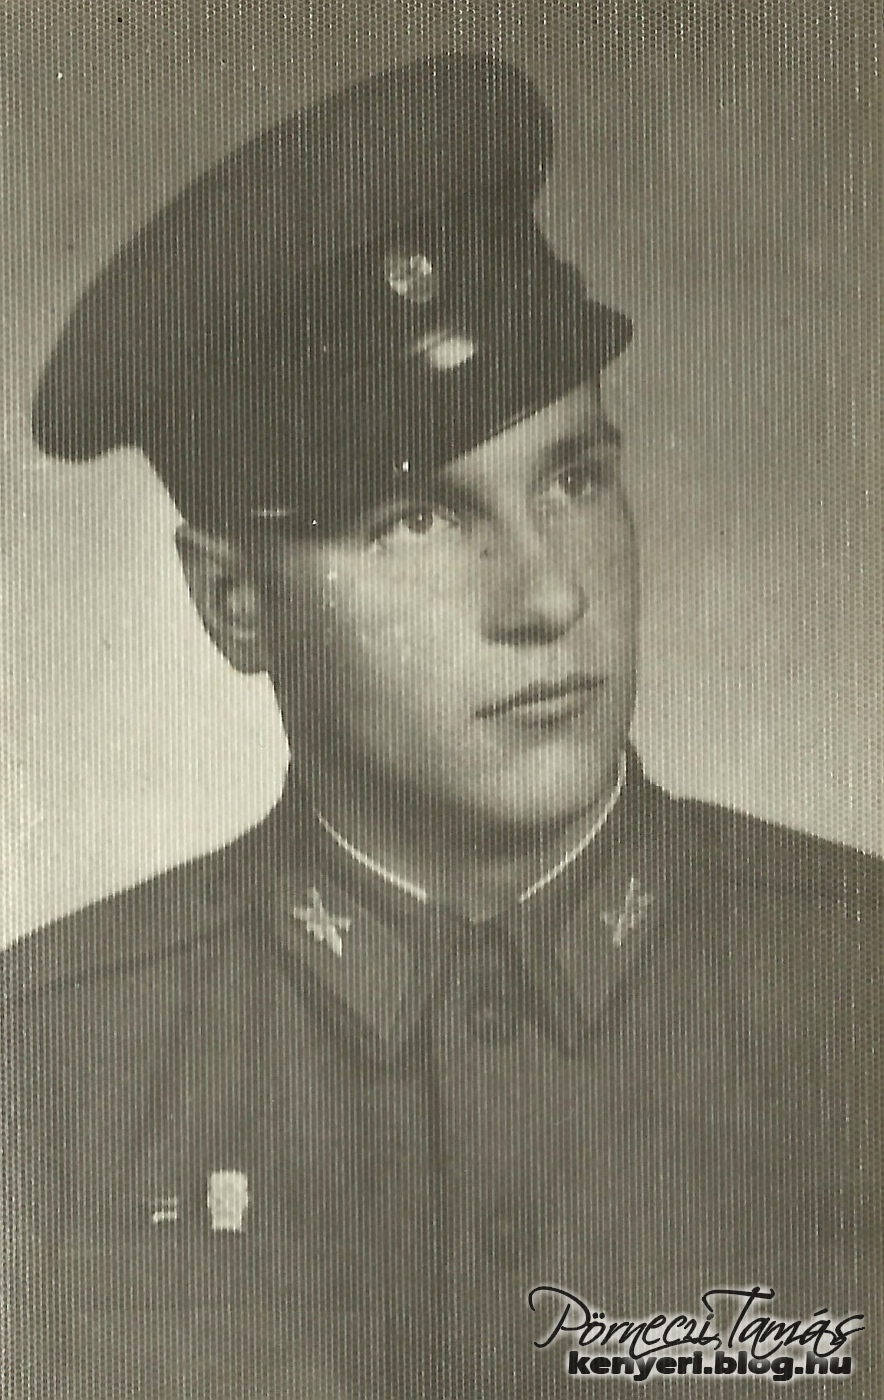 Csihar György hivatalos katonai fotója 1957-58. (Családi fotóalbumomból)